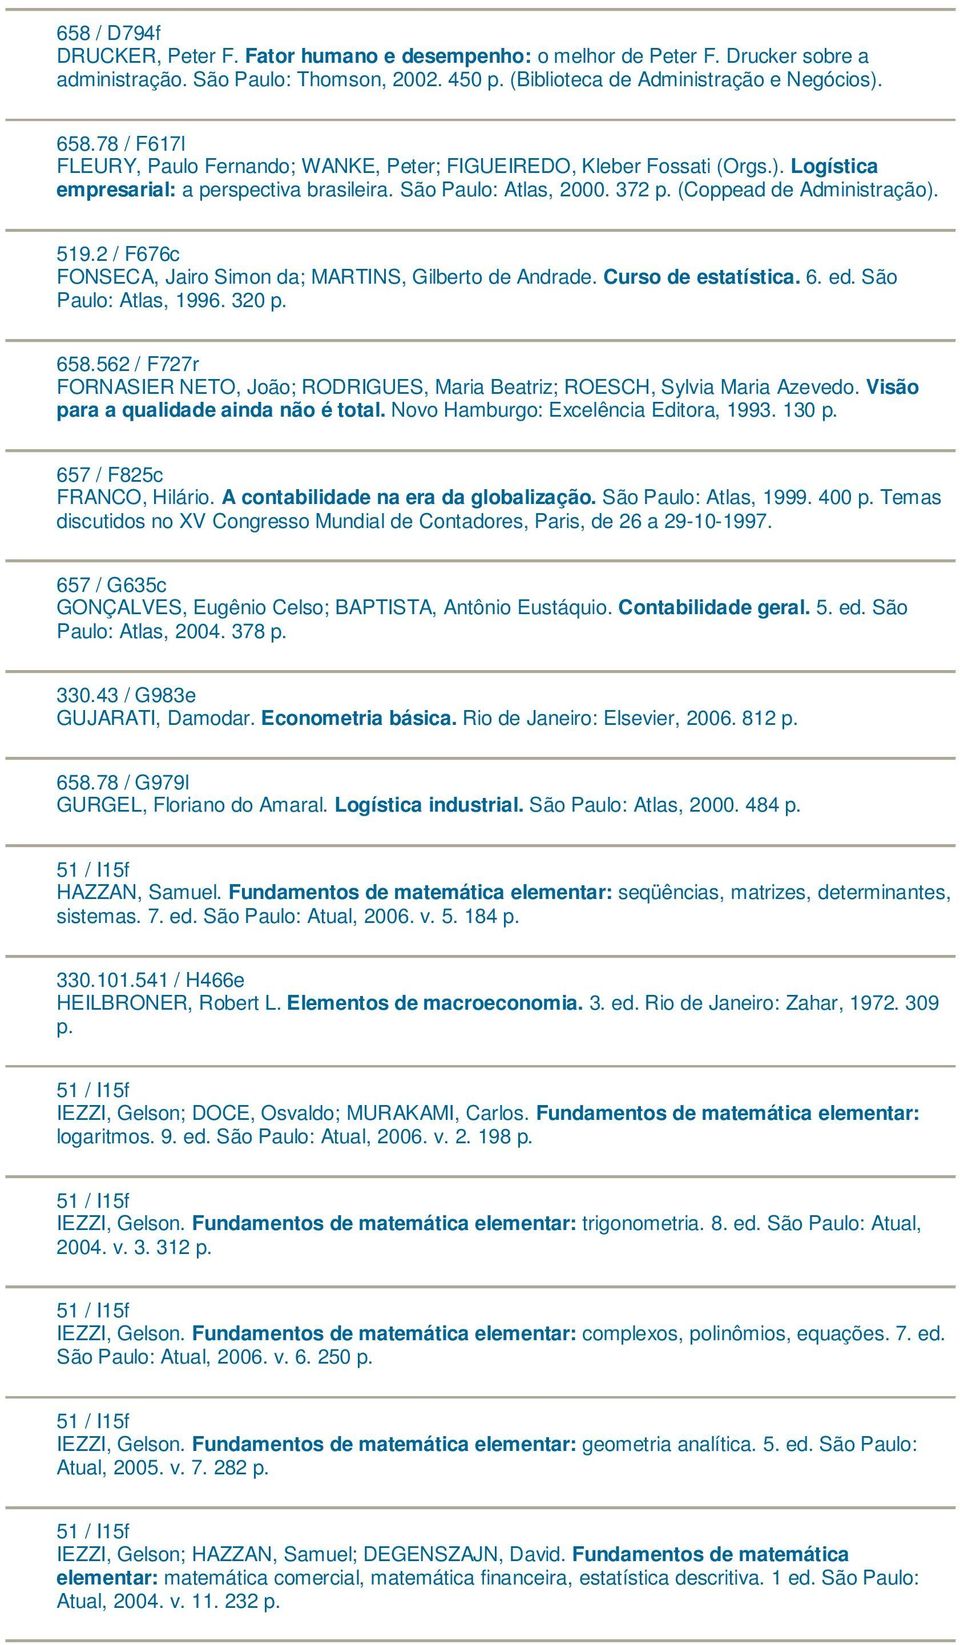 2 / F676c FONSECA, Jairo Simon da; MARTINS, Gilberto de Andrade. Curso de estatística. 6. ed. São Paulo: Atlas, 1996. 320 658.